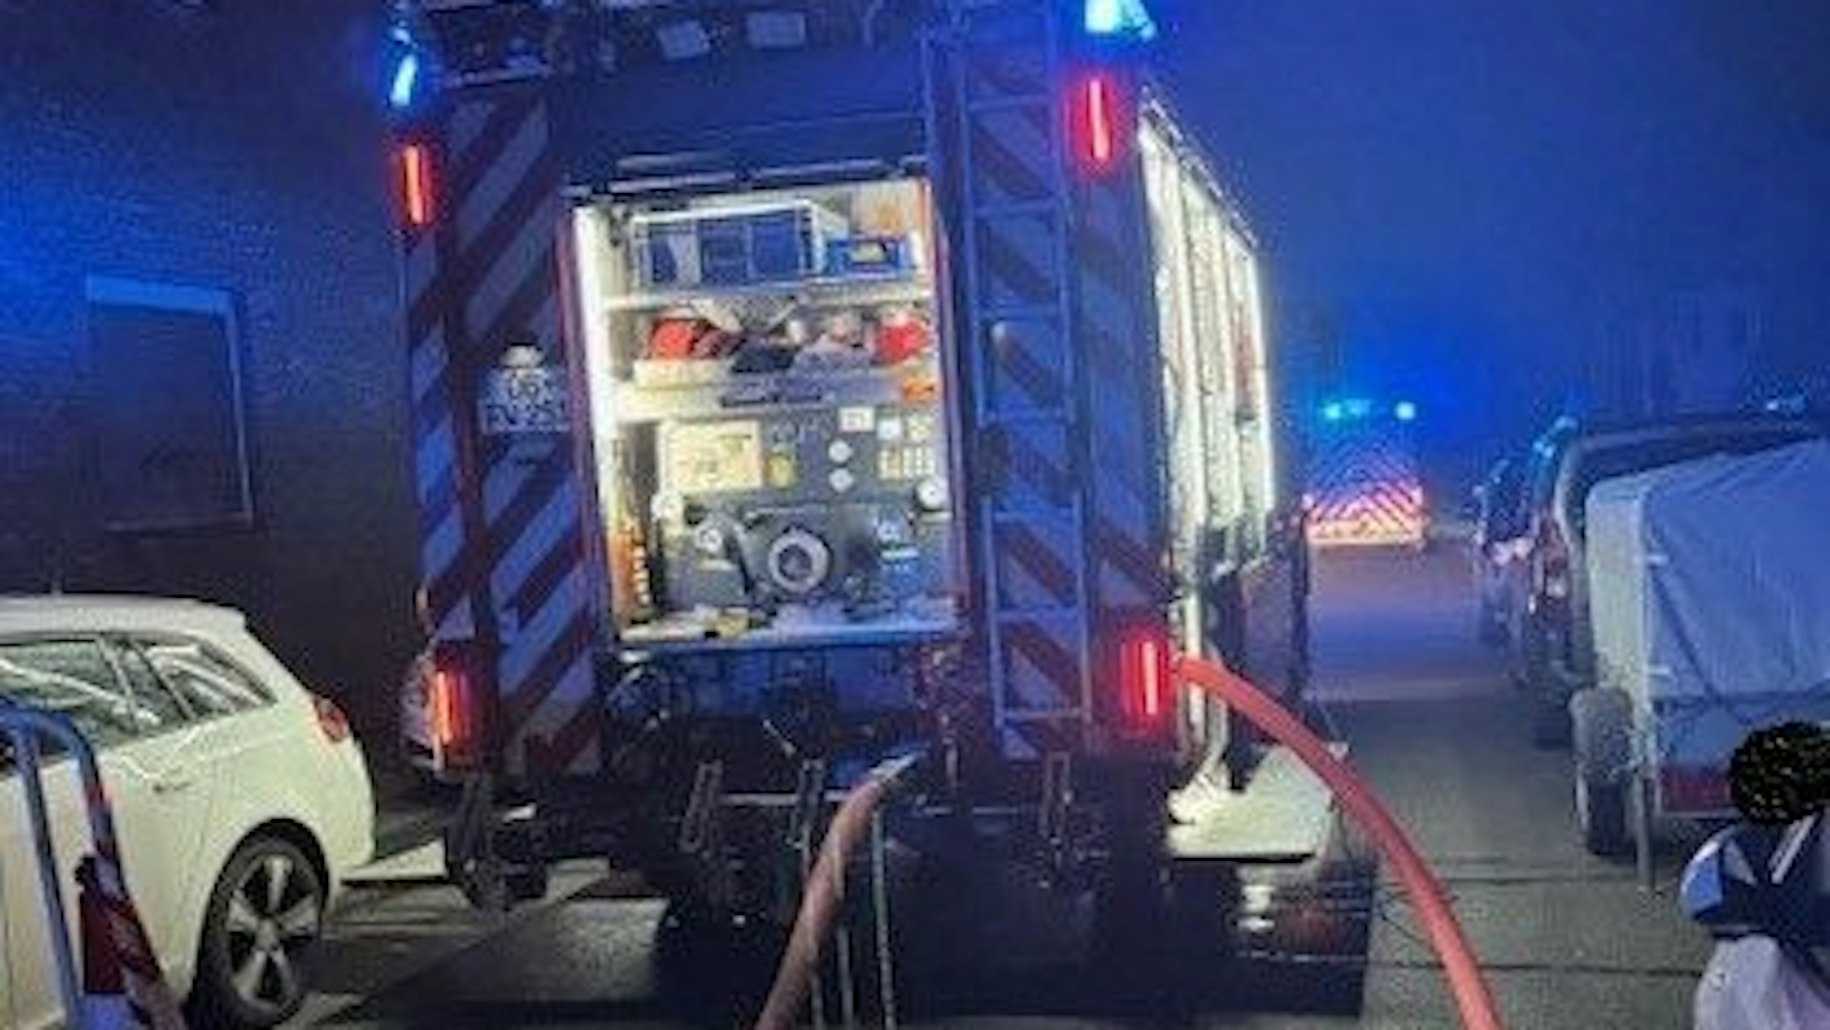 Die Feuerwehr Oberhausen war mit mehreren Fahrzeugen bei dem Brand in Alstaden im Einsatz. Eine 84-Jährige ist bei dem Feuer gestorben.